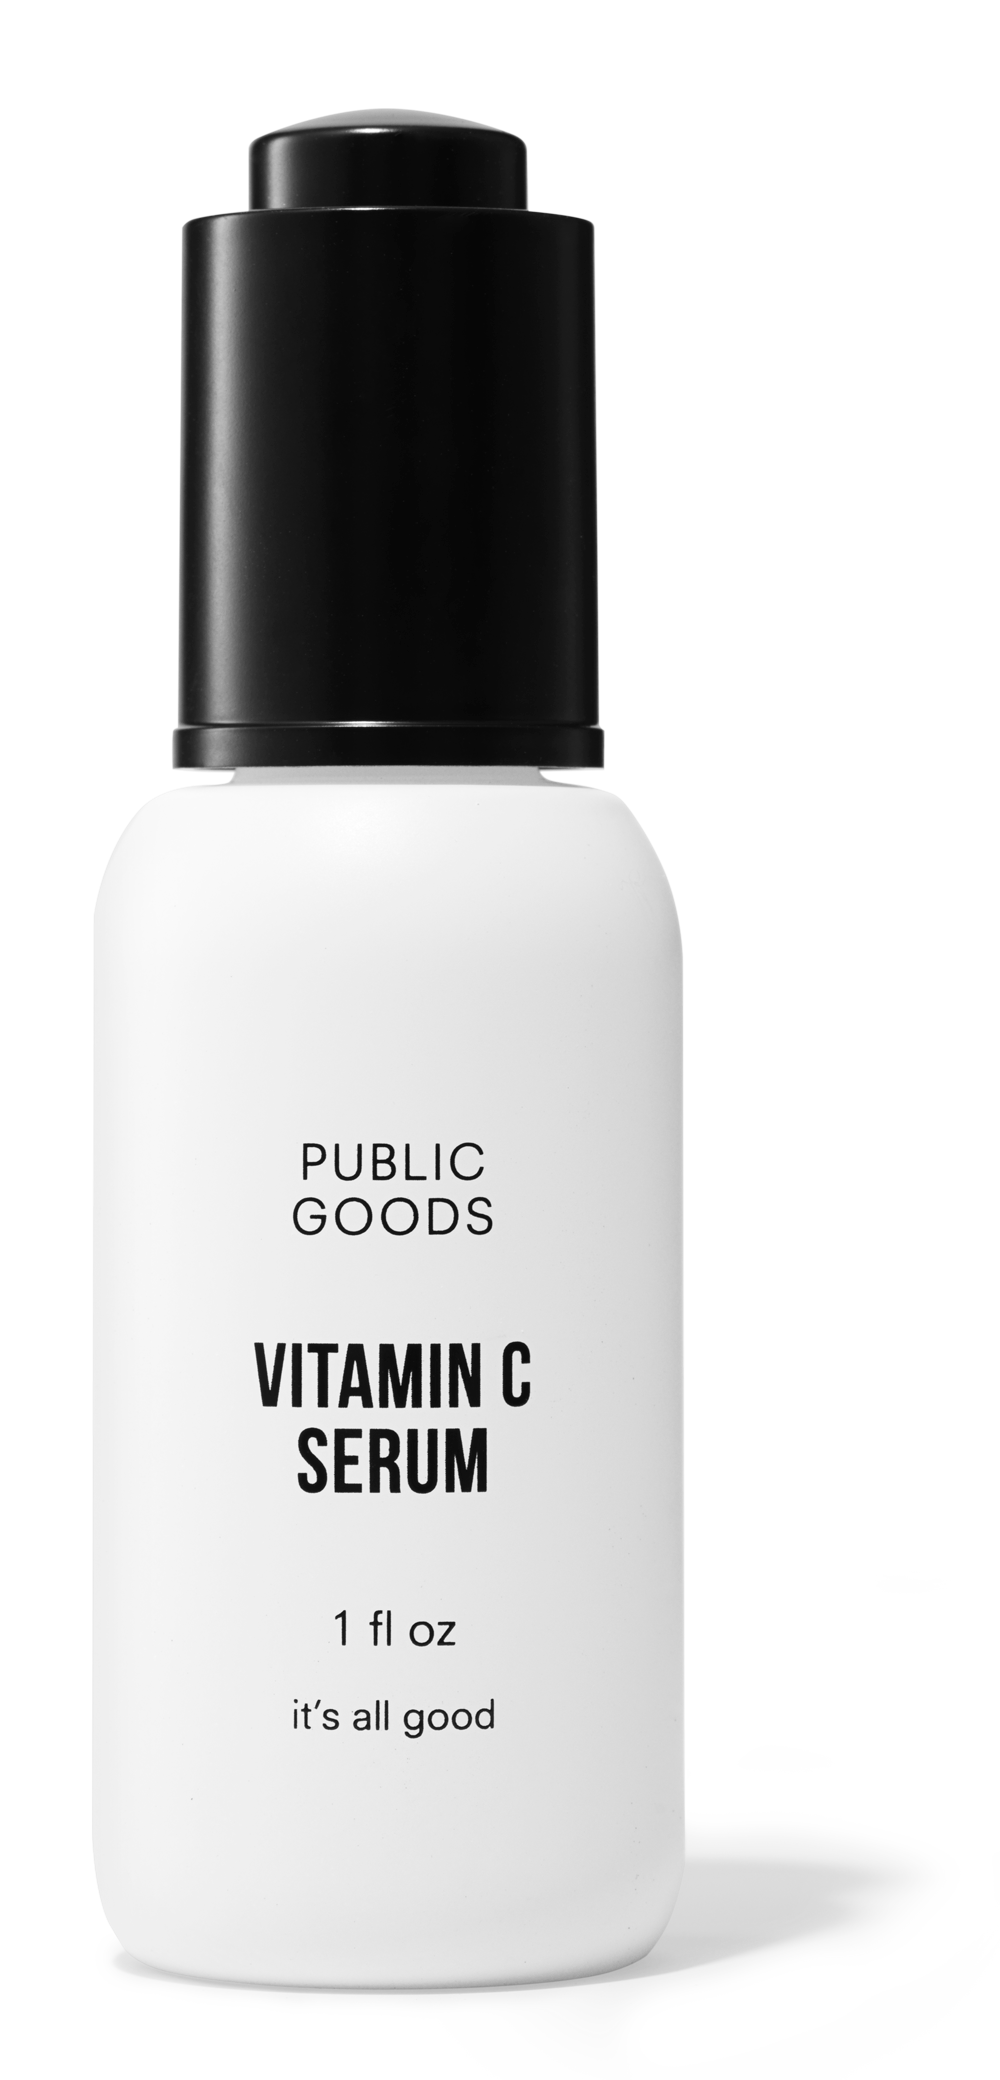 Vitamin C serum product image